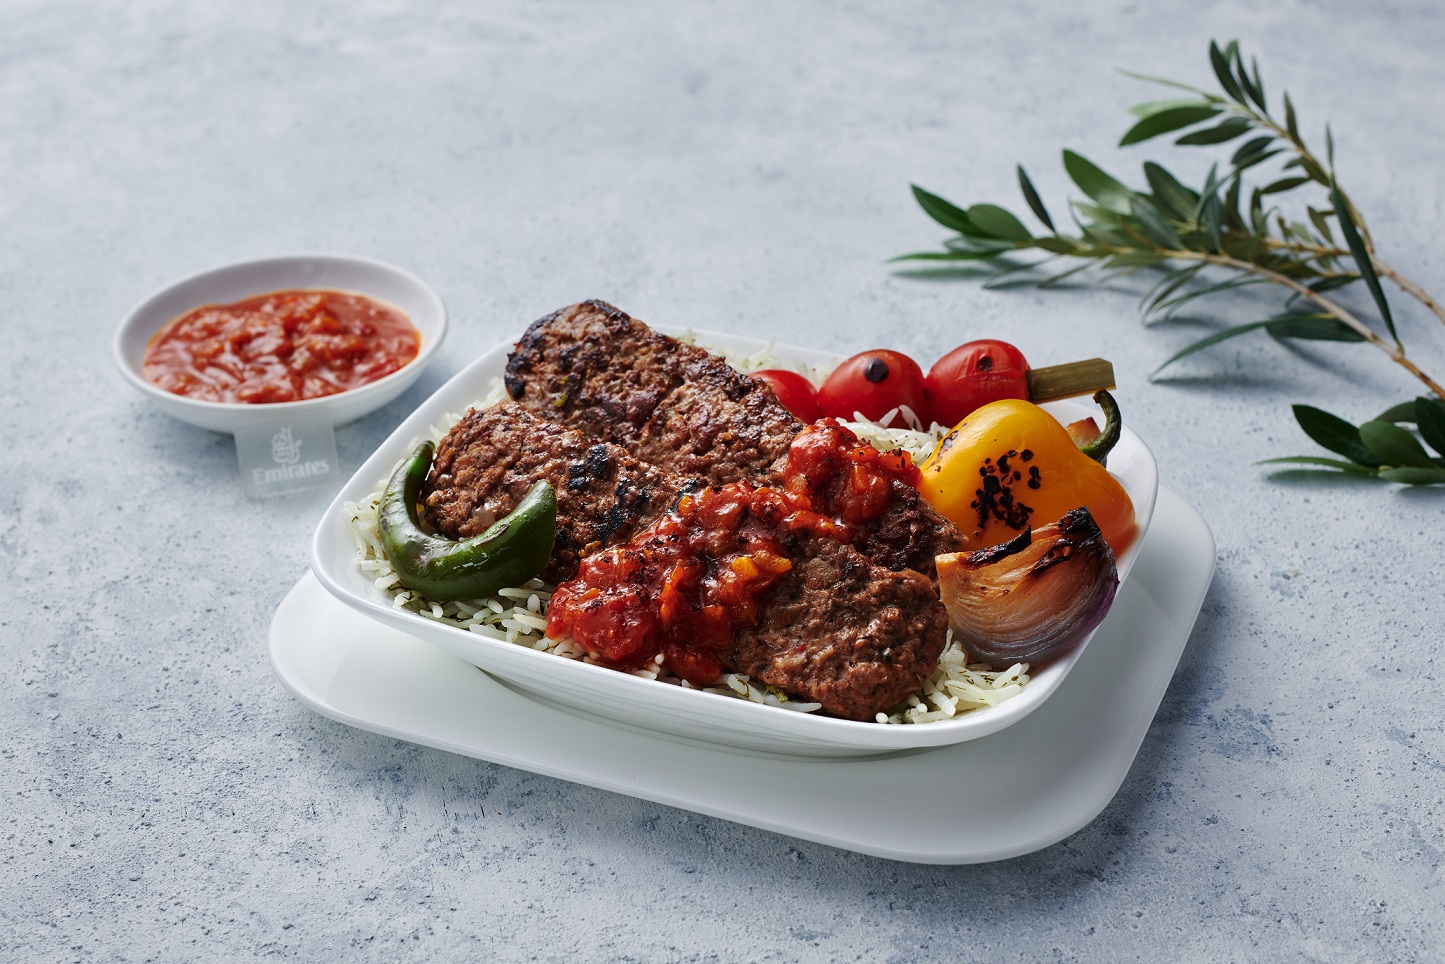 阿联酋航空推出“素食菜谱库”含300种菜品搭配  植物基机上餐食需求增幅达40%